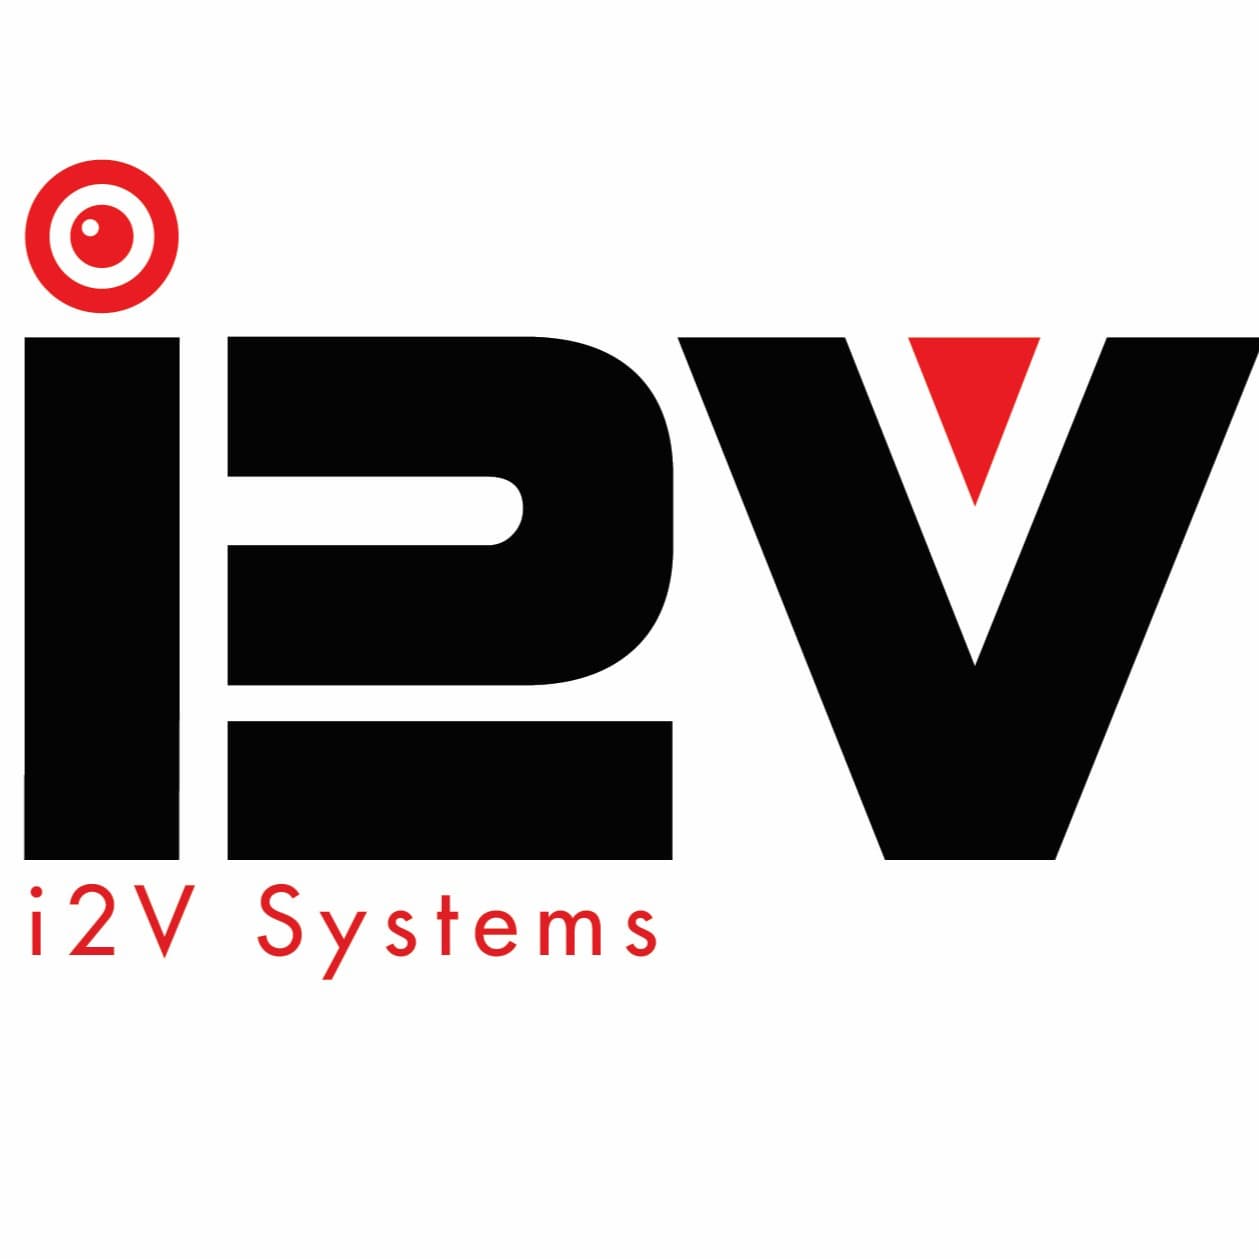 i2v system's logo